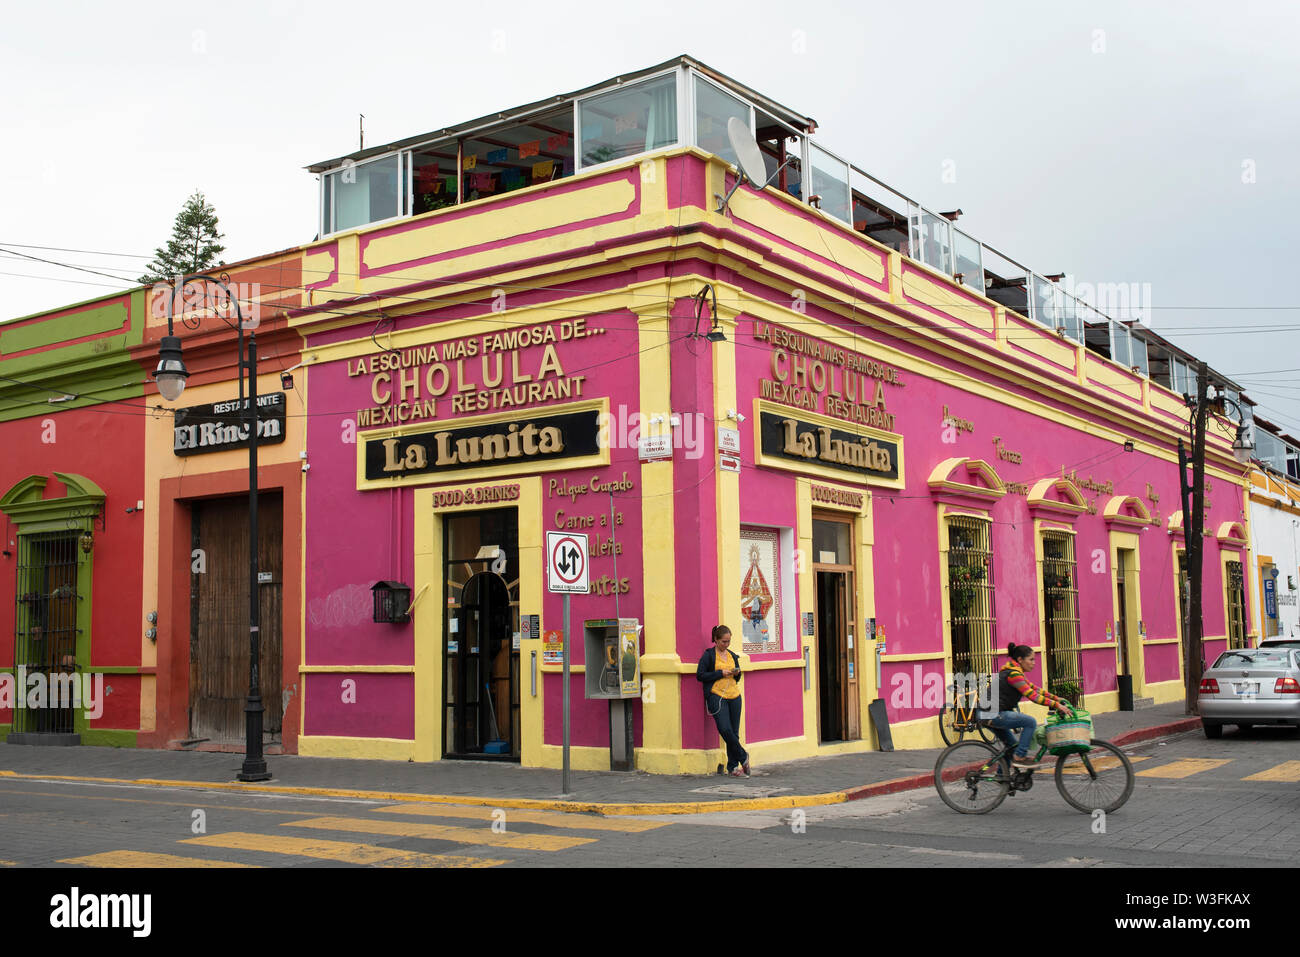 Dipinto luminoso edificio coloniale con ristorante messicano nel centro cittadino di Cholula, vicino a Puebla, in Messico. Giu 2019 Foto Stock